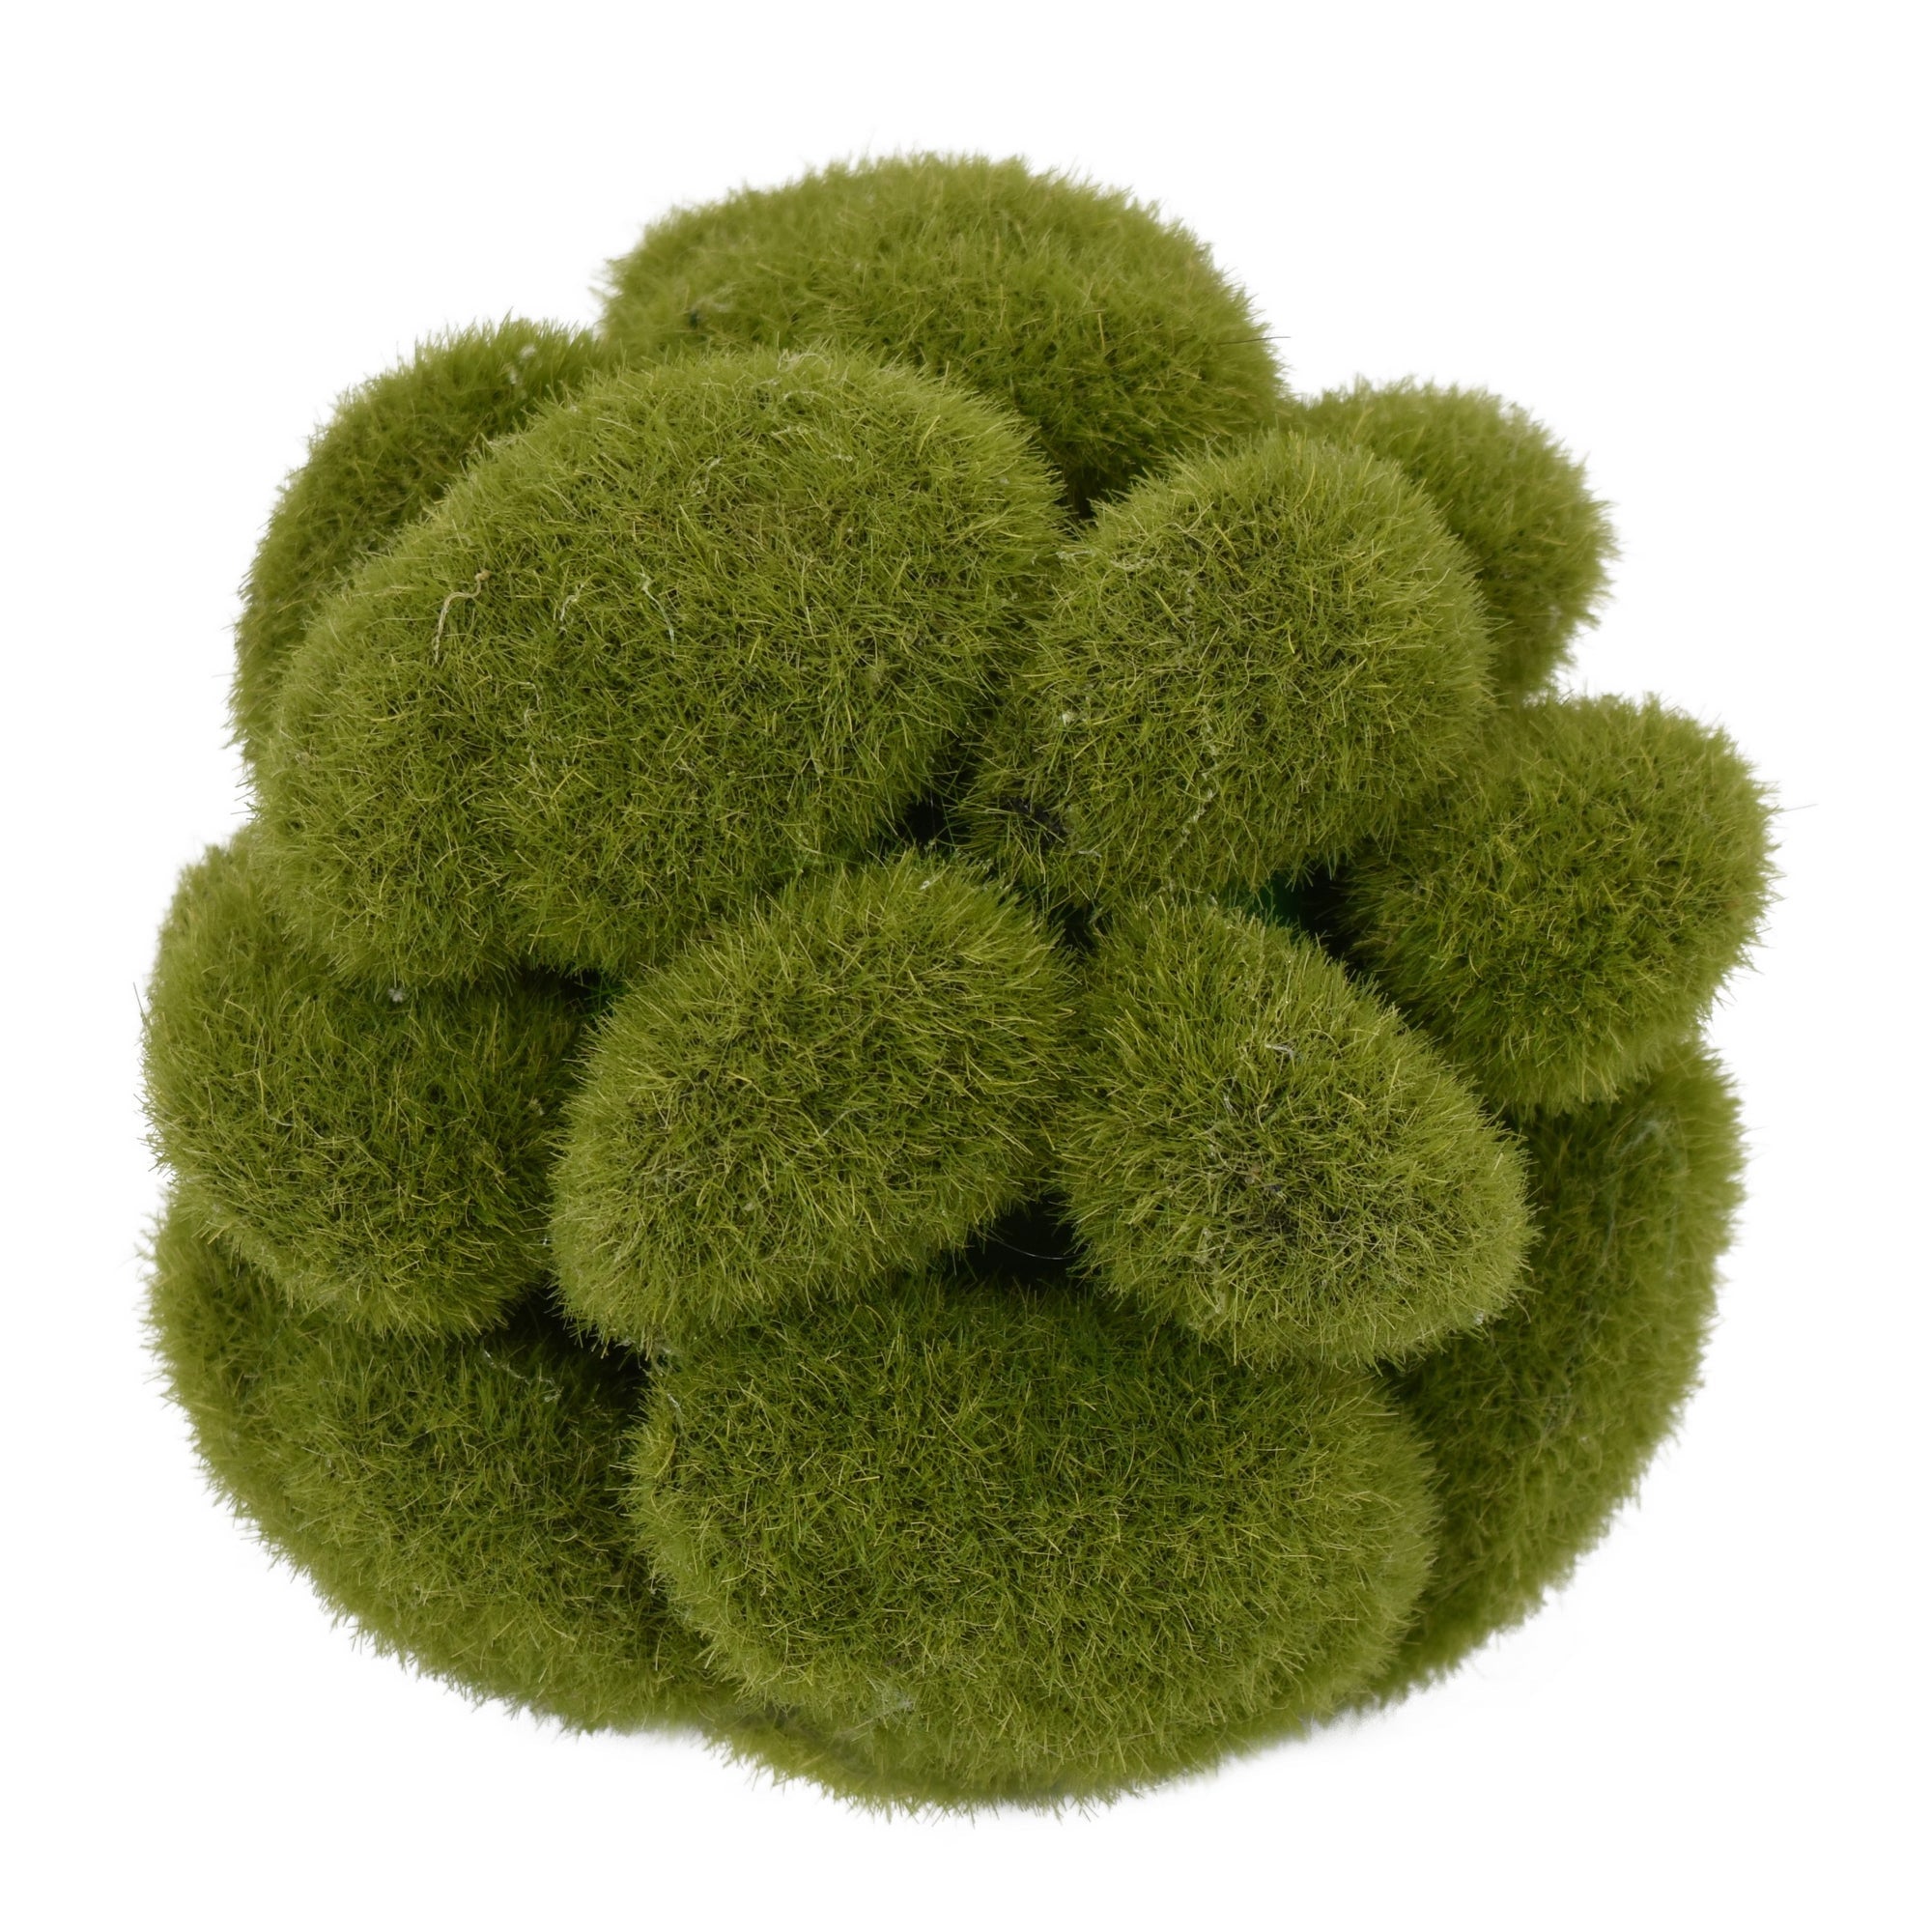 Artificial Moss Ball